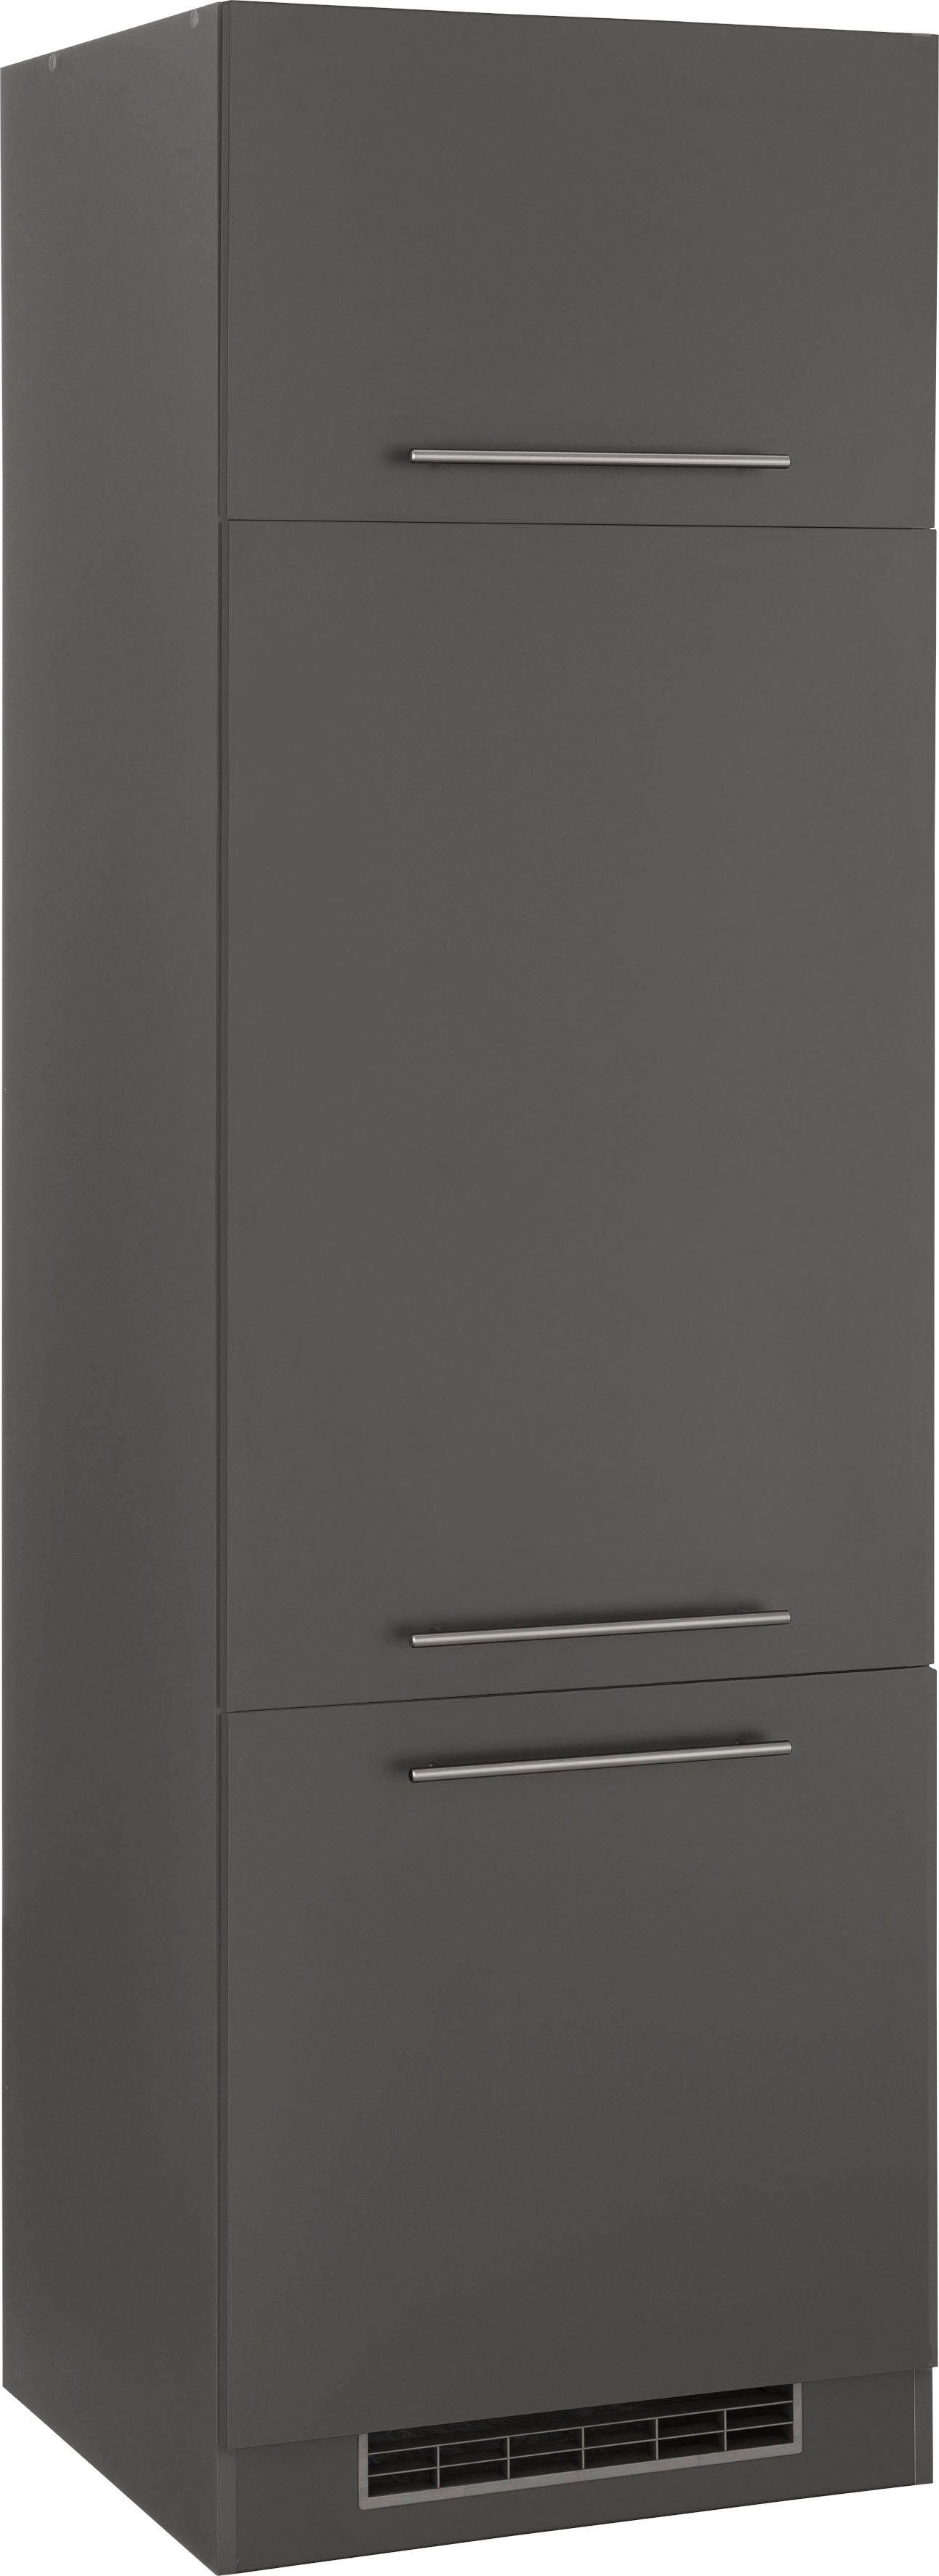 wiho Küchen Kühlumbauschrank Unna 60 cm breit, ohne E-Gerät anthrazit/anthrazit | Anthrazit | Umbauschränke